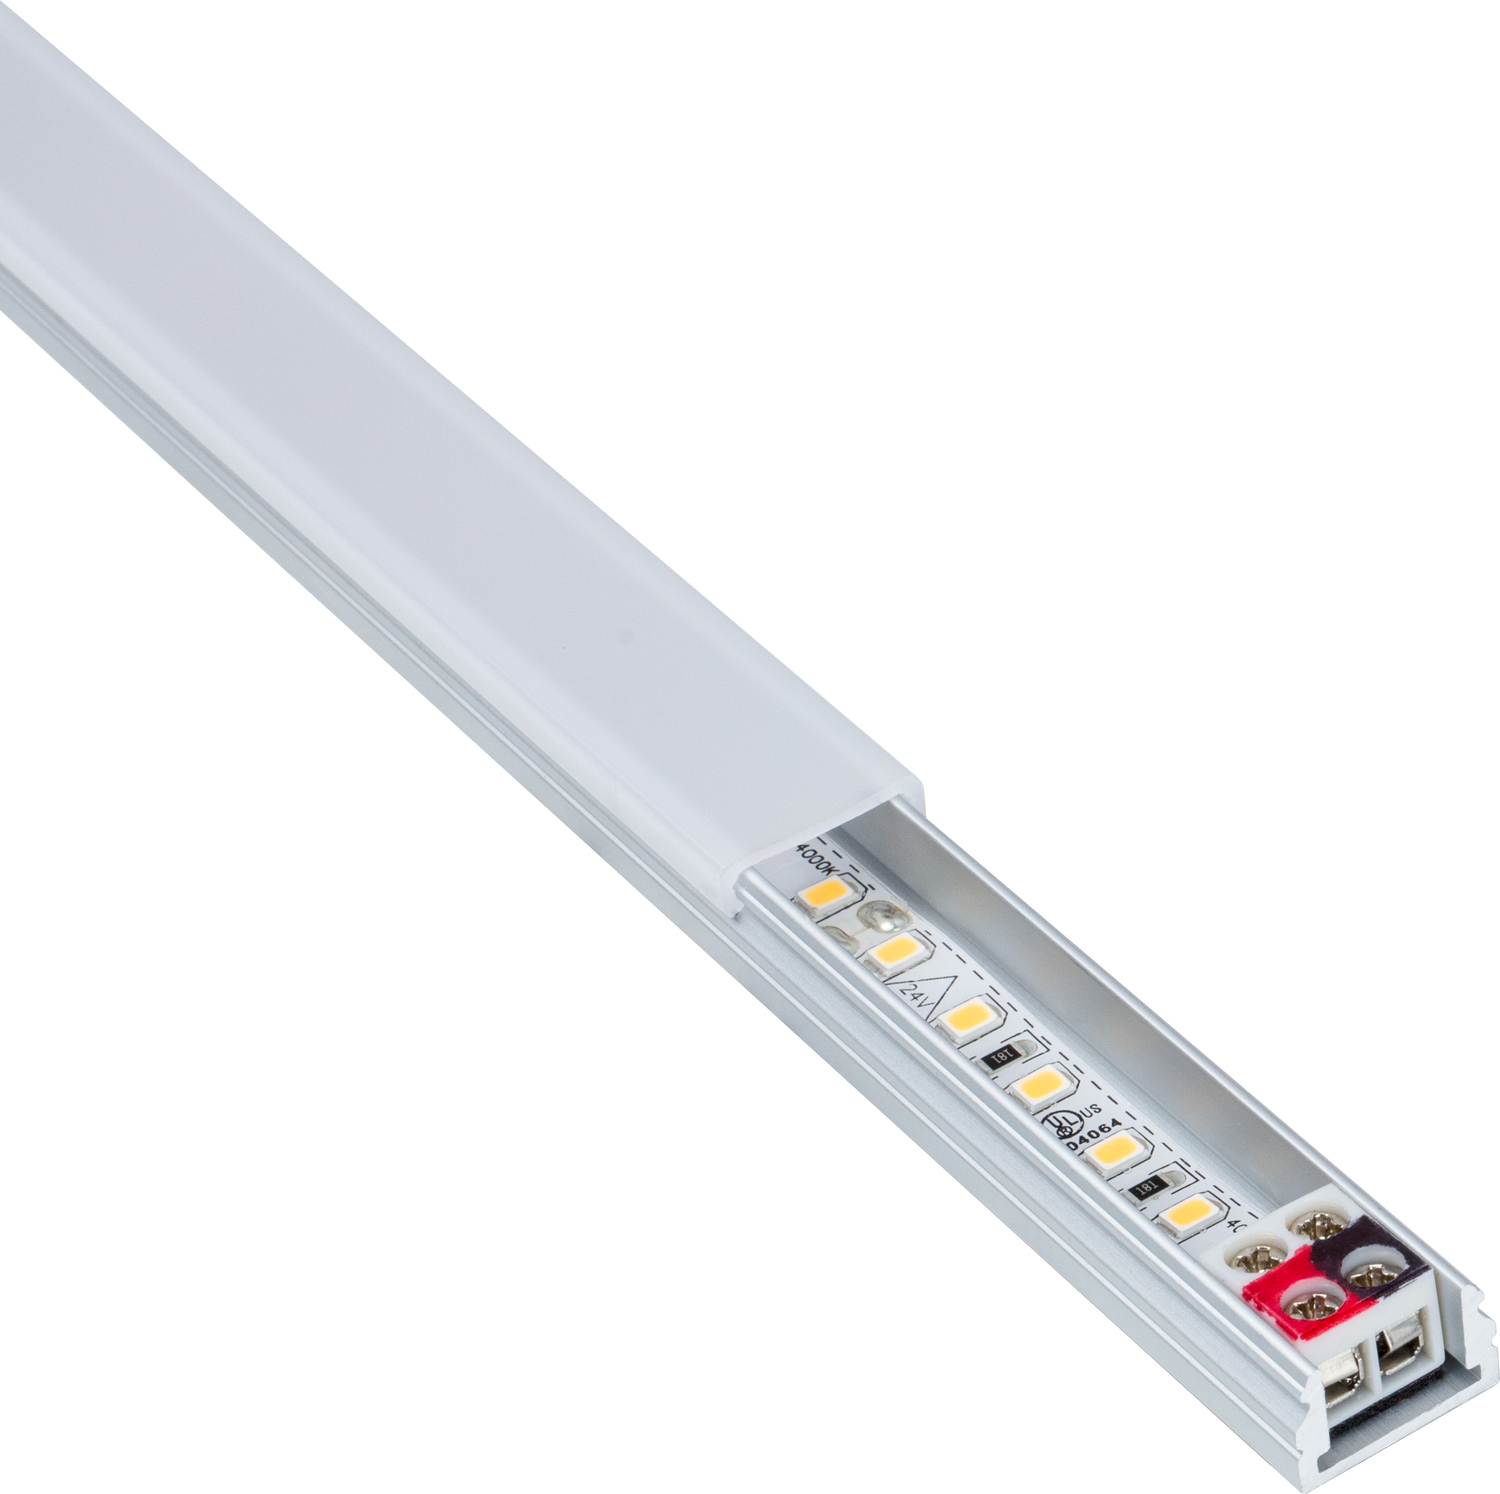 profile light in kitchen Task Lighting Linear Fixtures;Single-white Lighting Aluminum